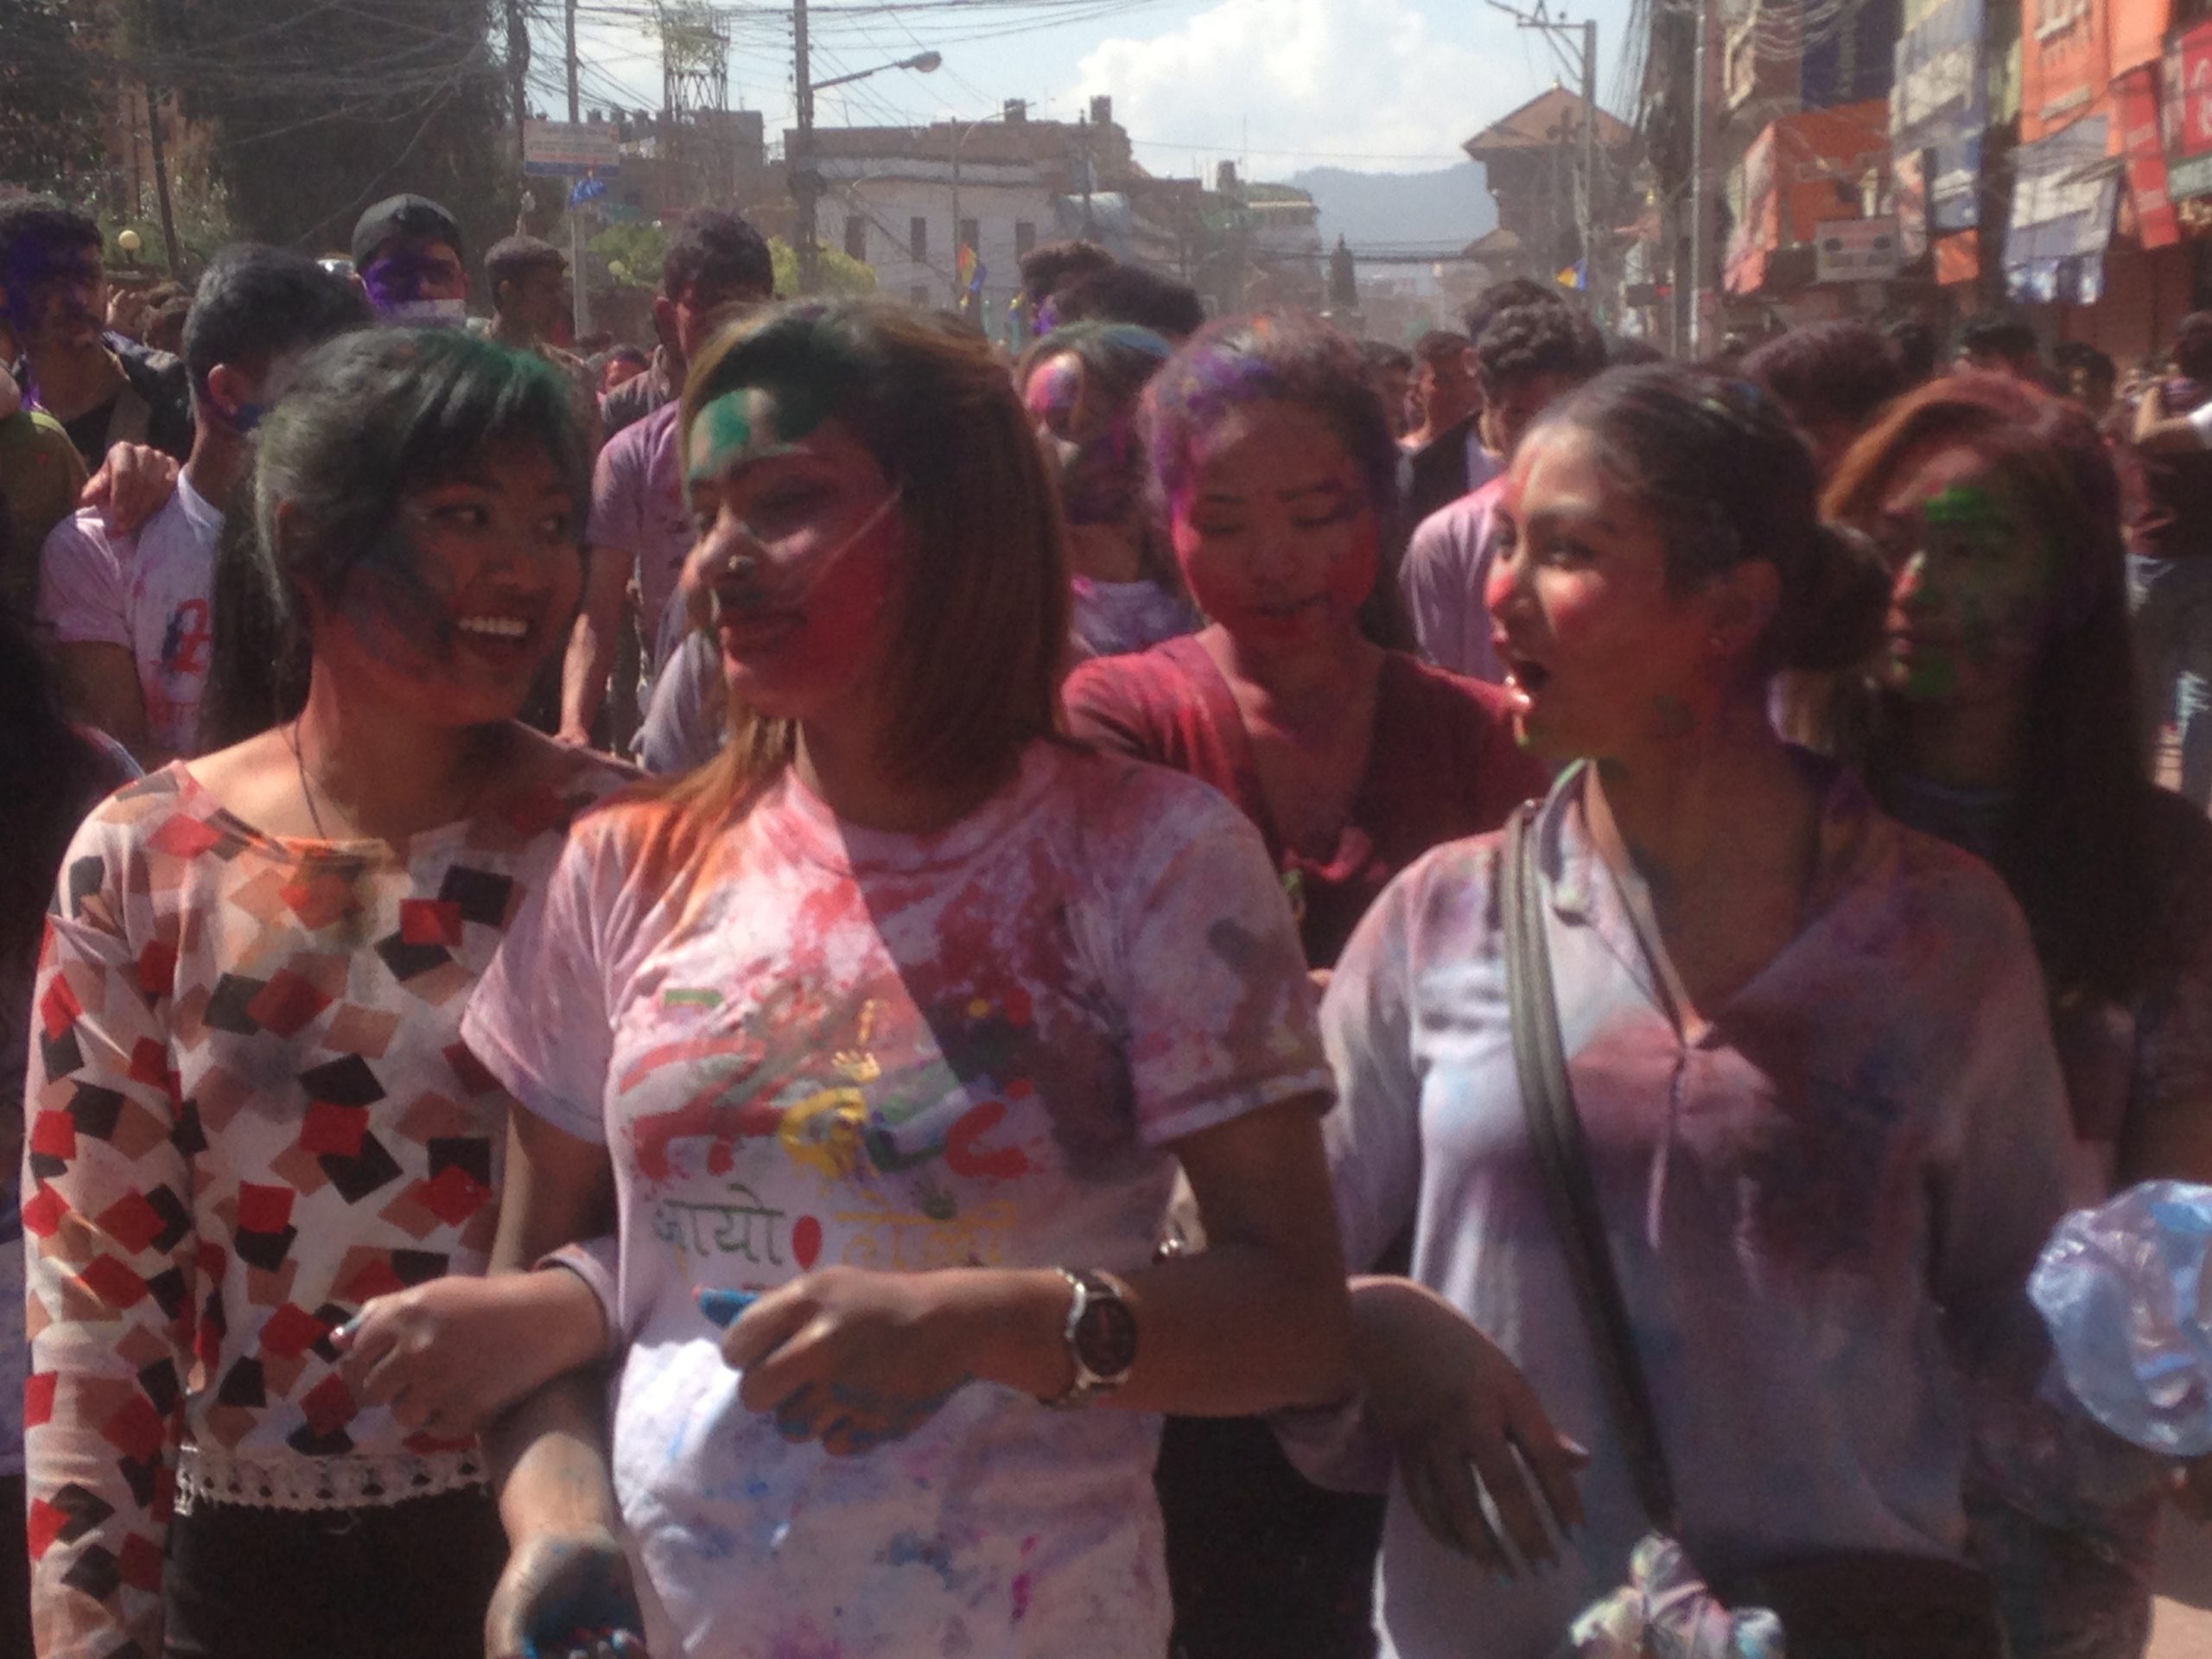 Holi festival celebrated in Nepal